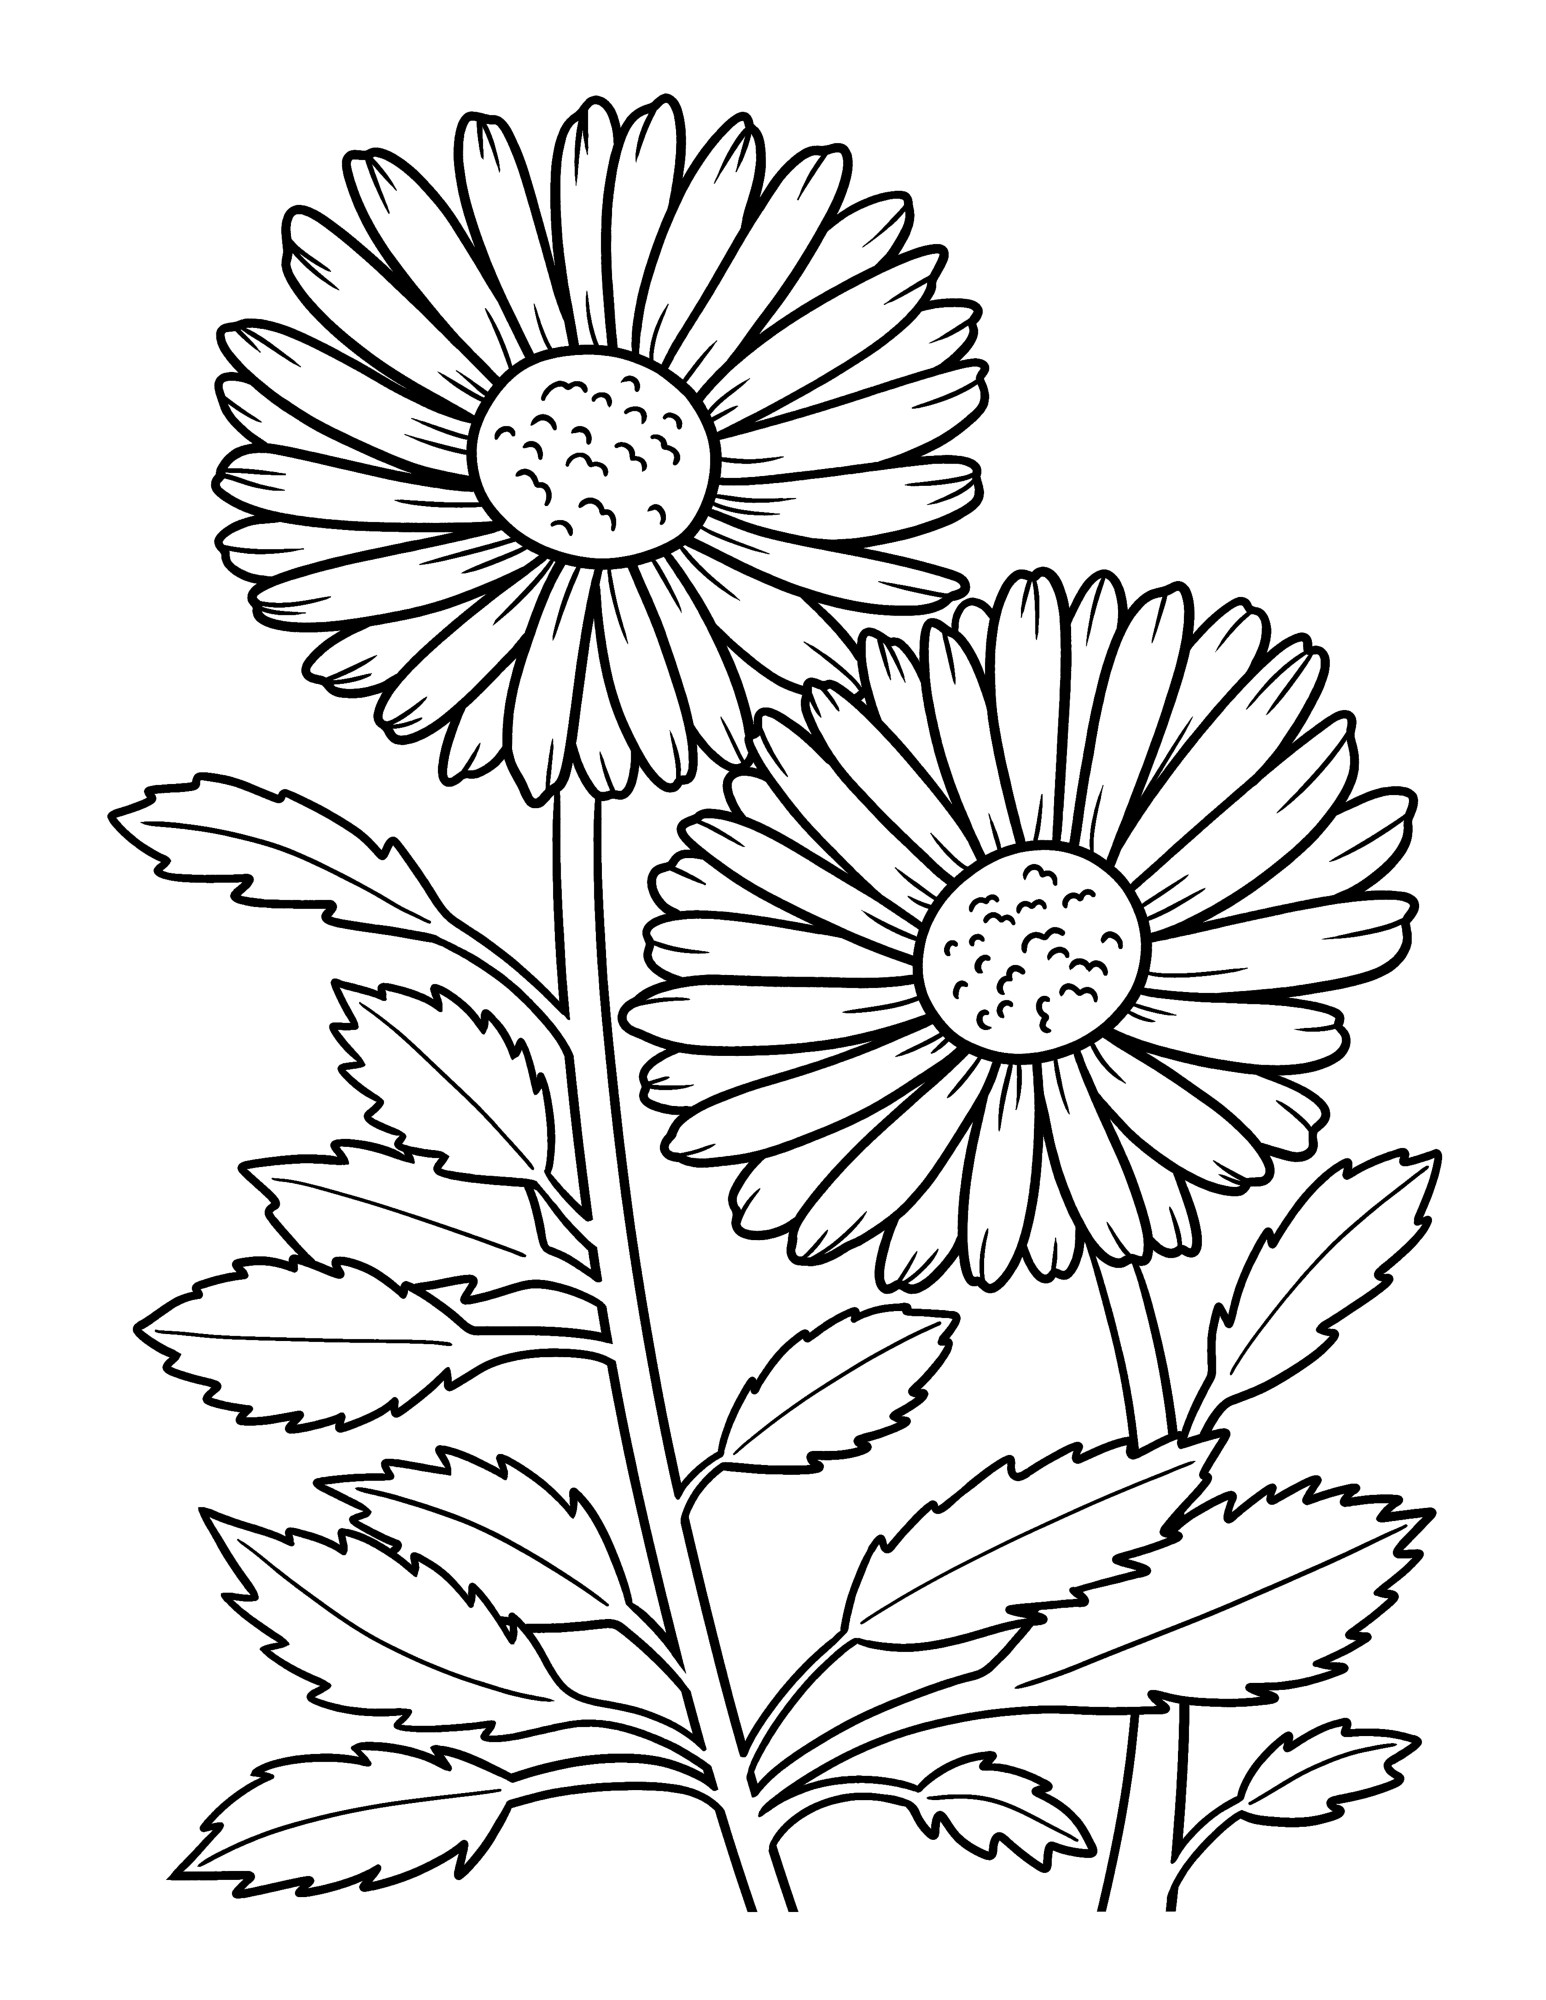 Раскраска для детей: цветок ромашки и стебли